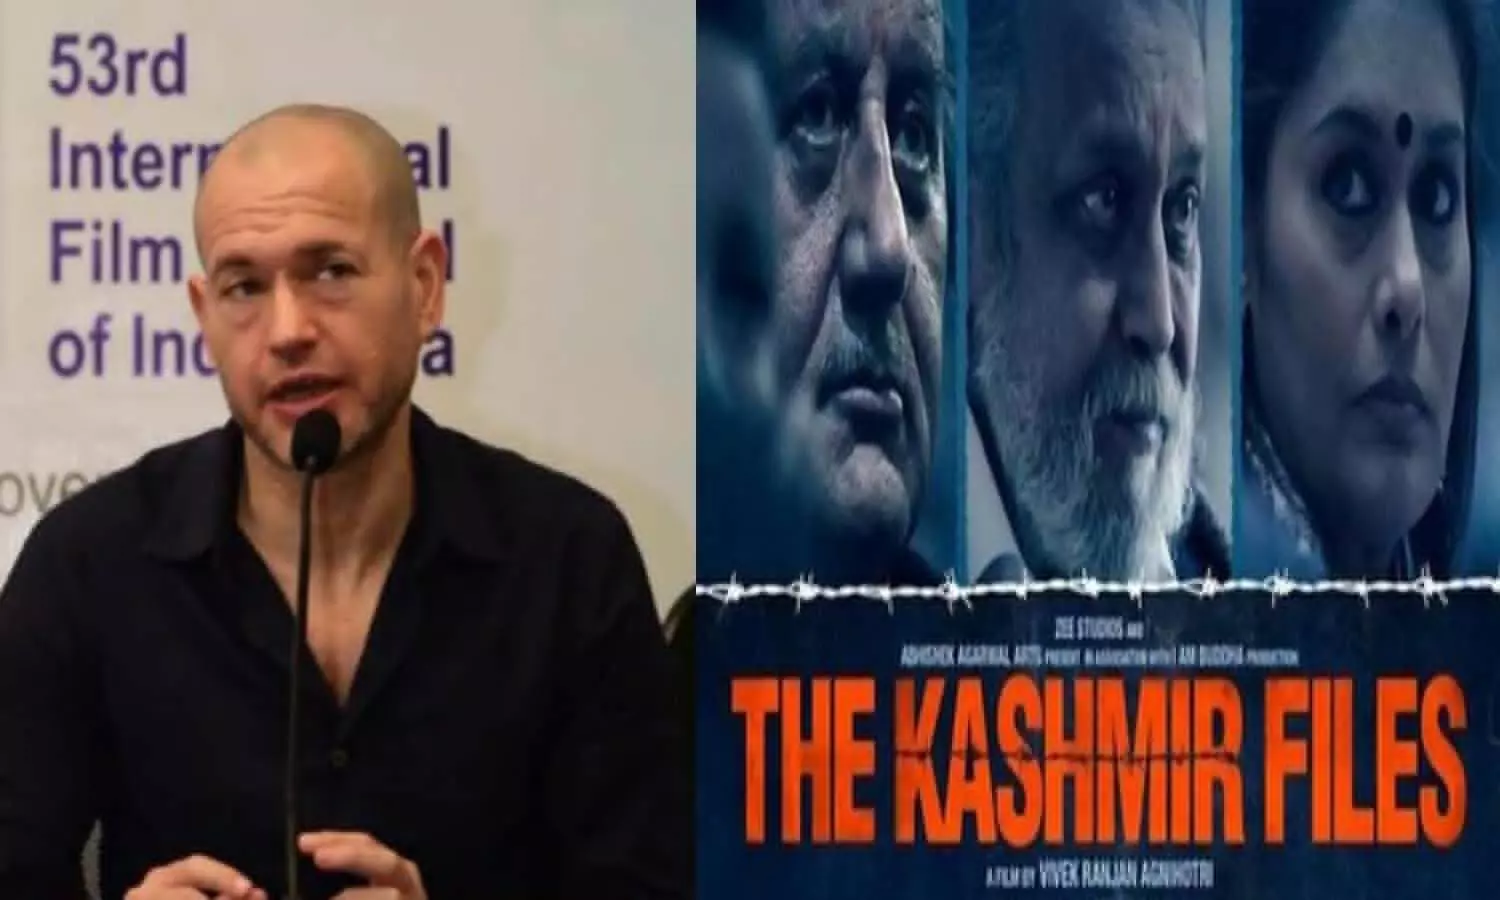 Israeli filmmaker Nadav Lapid called Kashmir files a propaganda and vulgar film